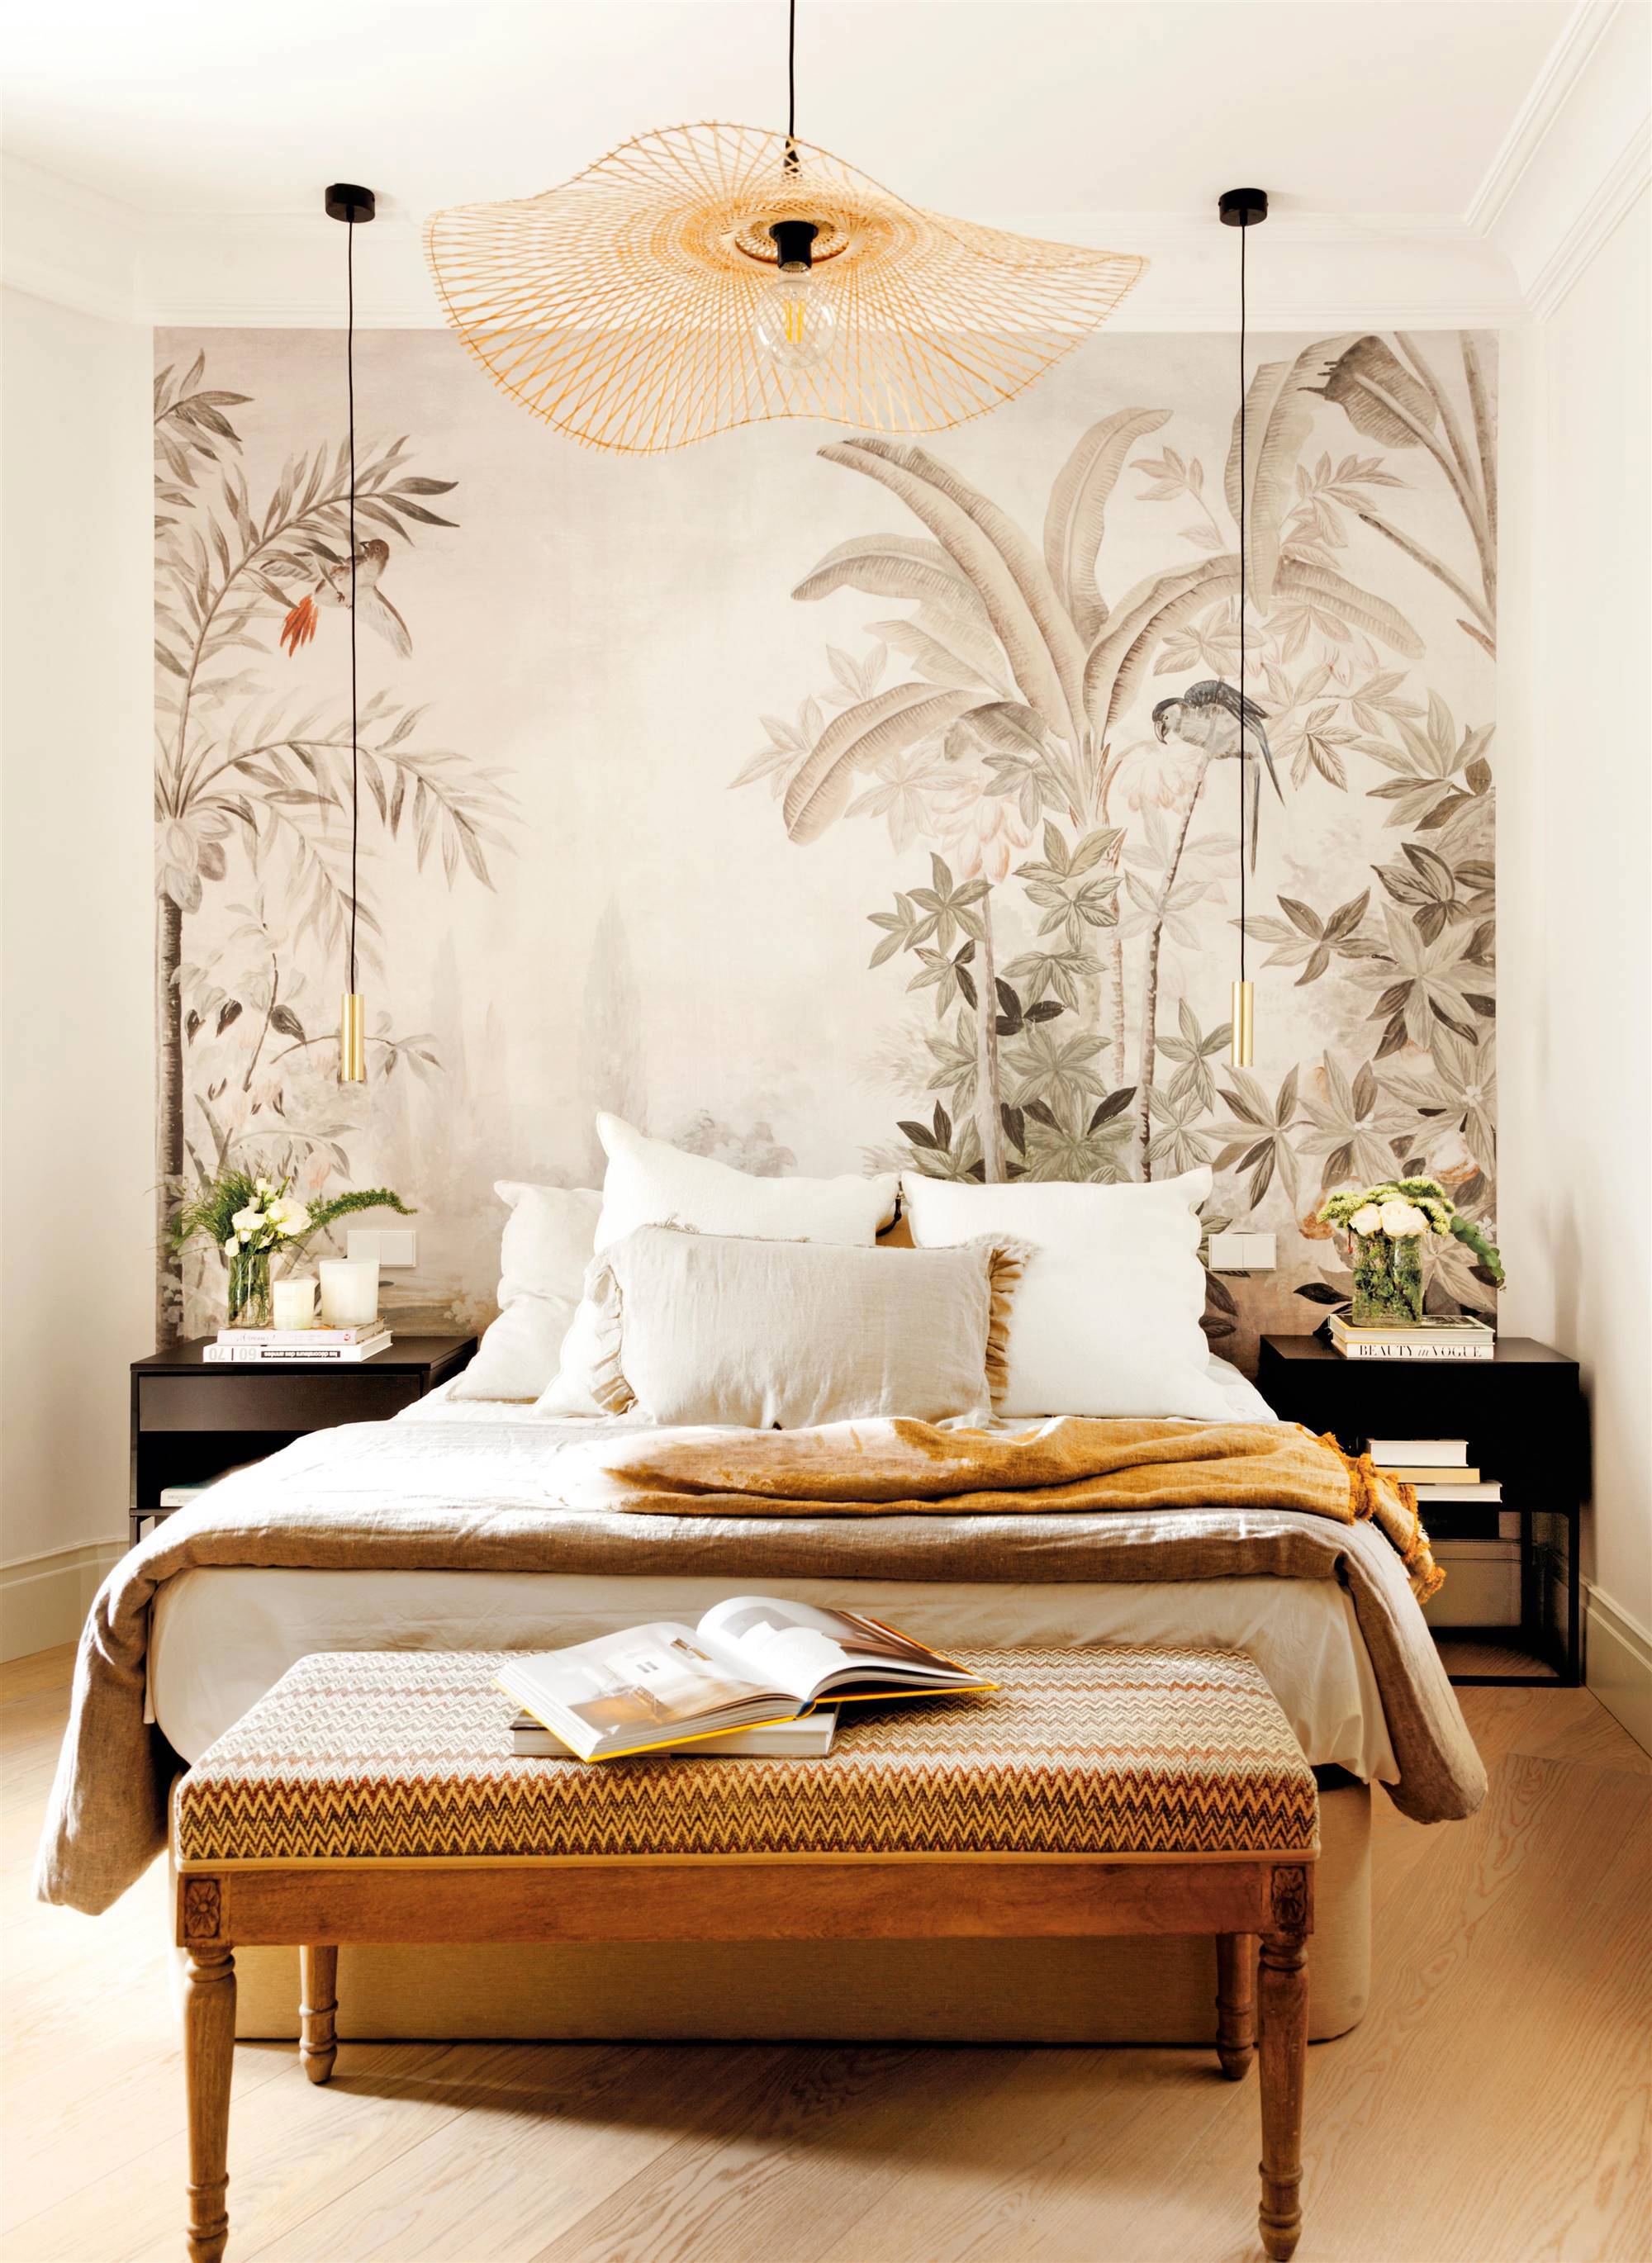 Dormitorio con papel pintado exótico en el cabecero